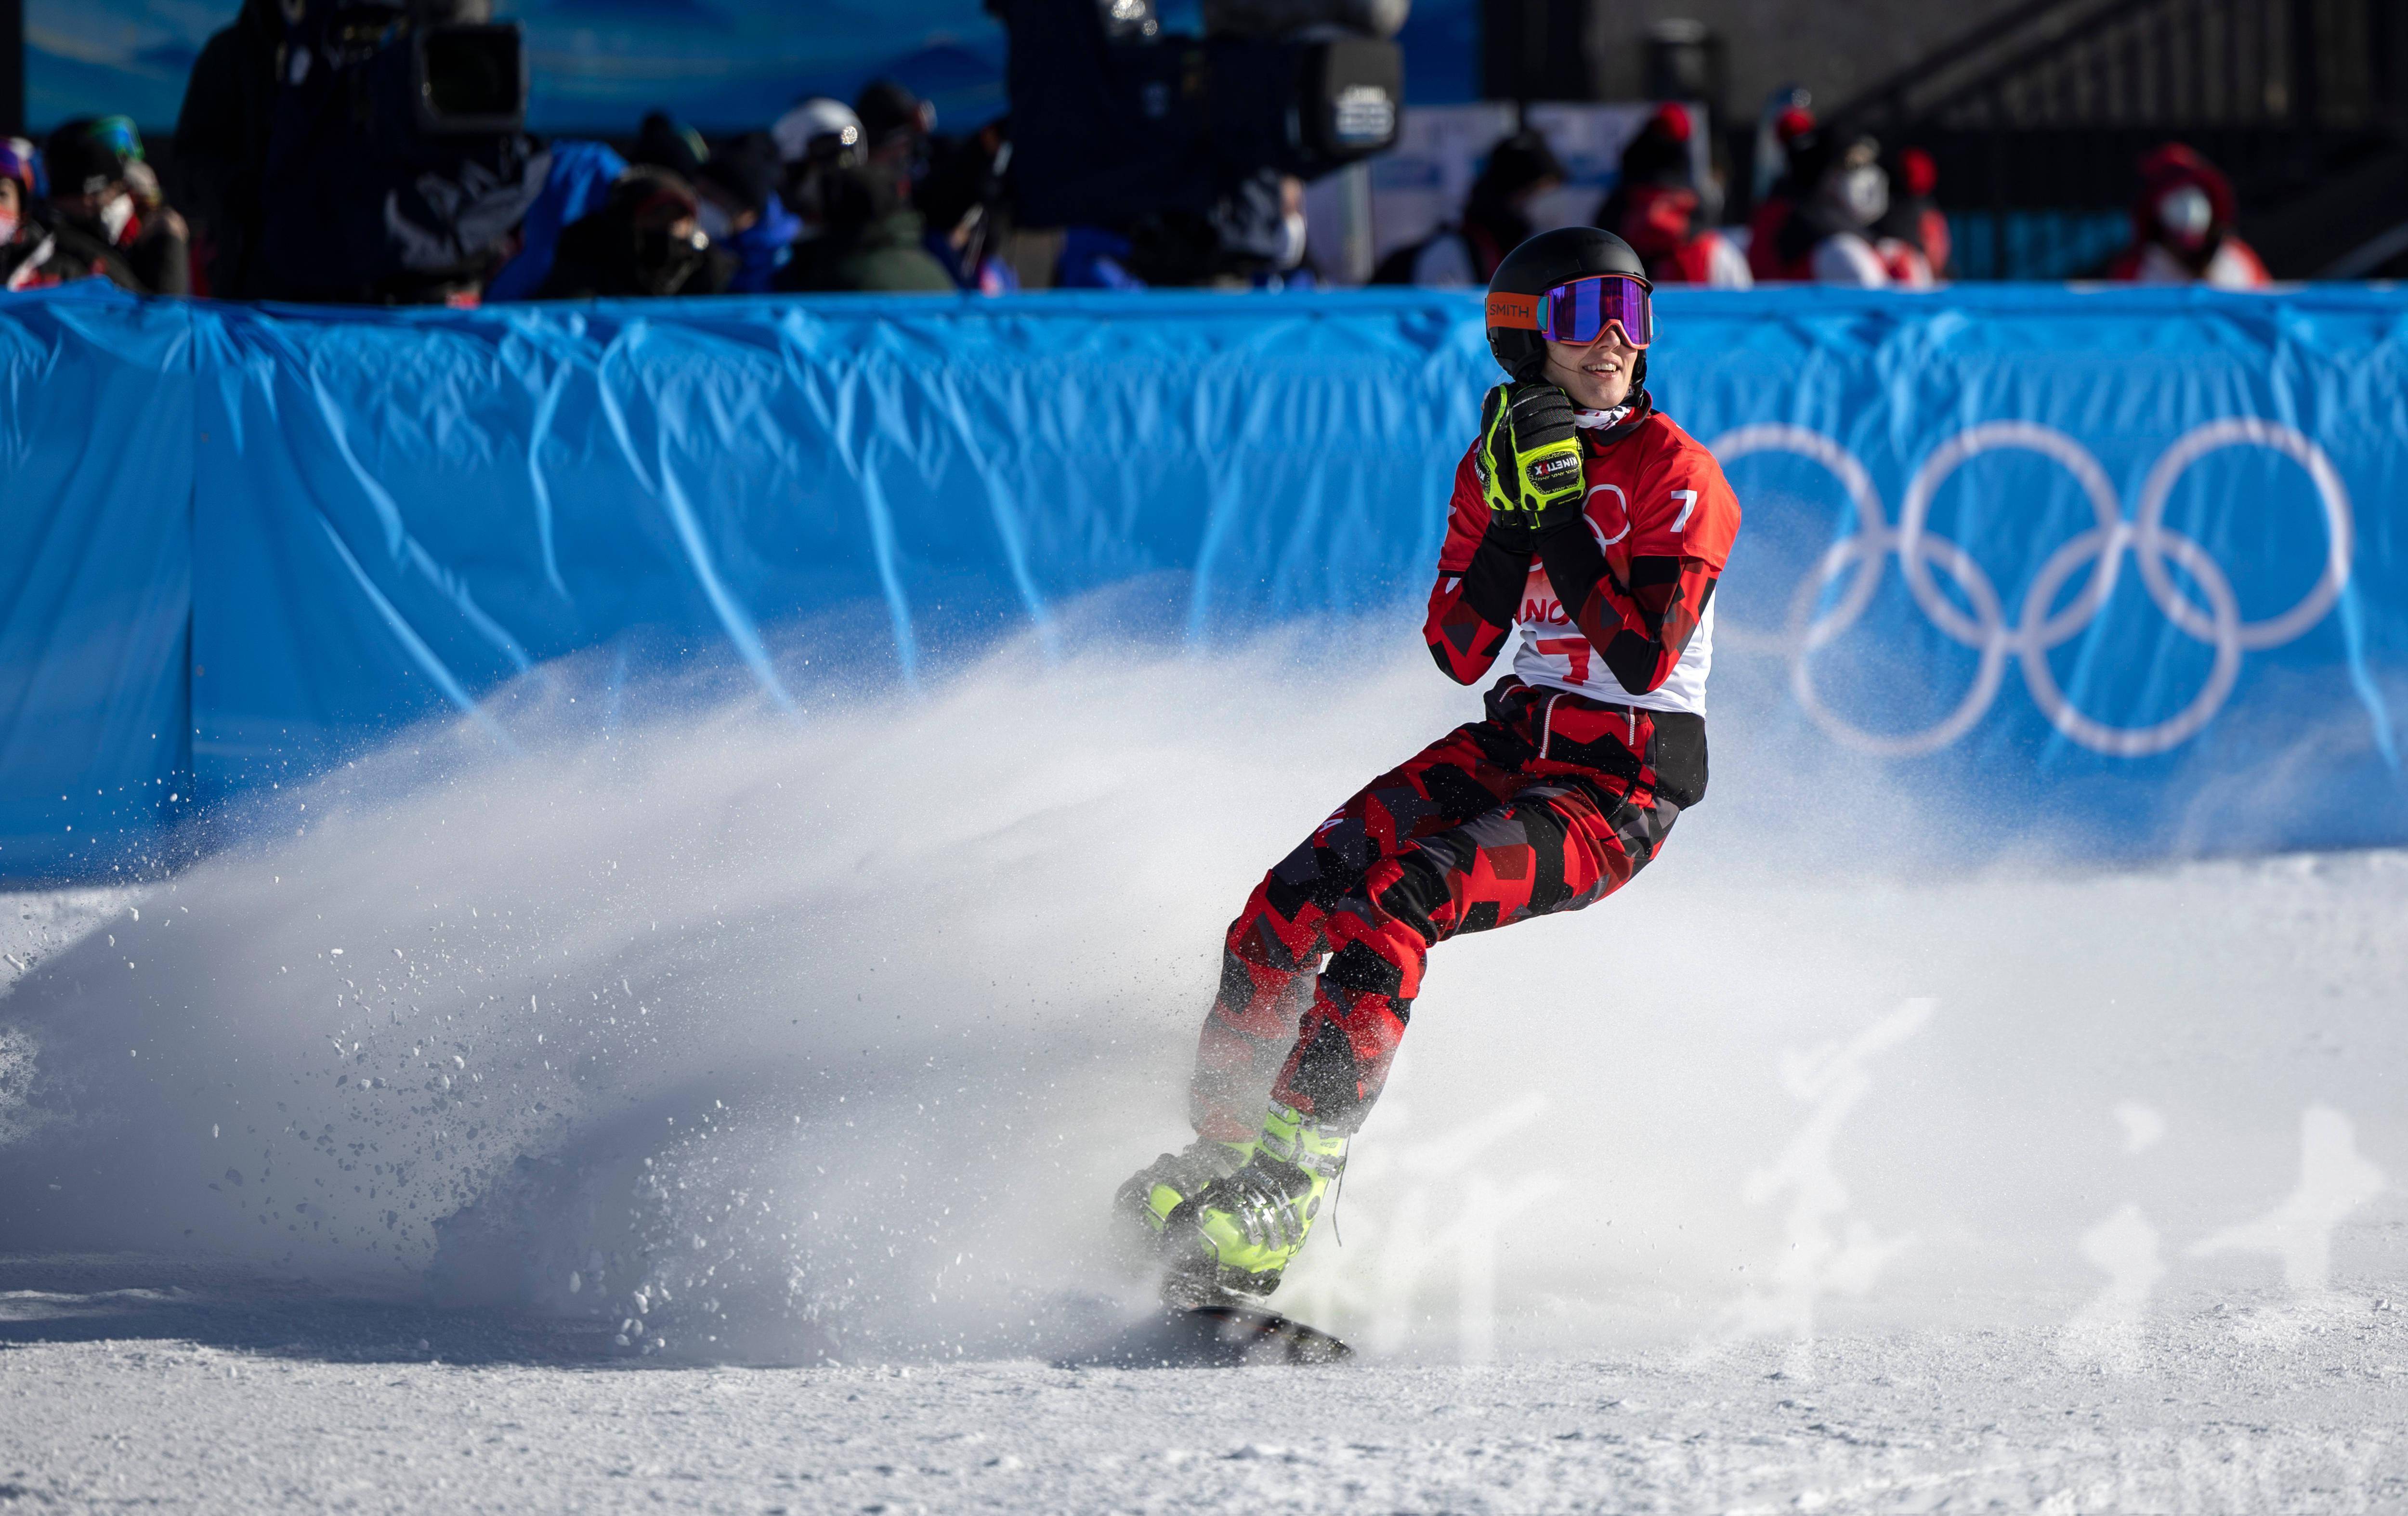 许畅 摄当日,北京2022年冬奥会单板滑雪女子平行大回转比赛在张家口